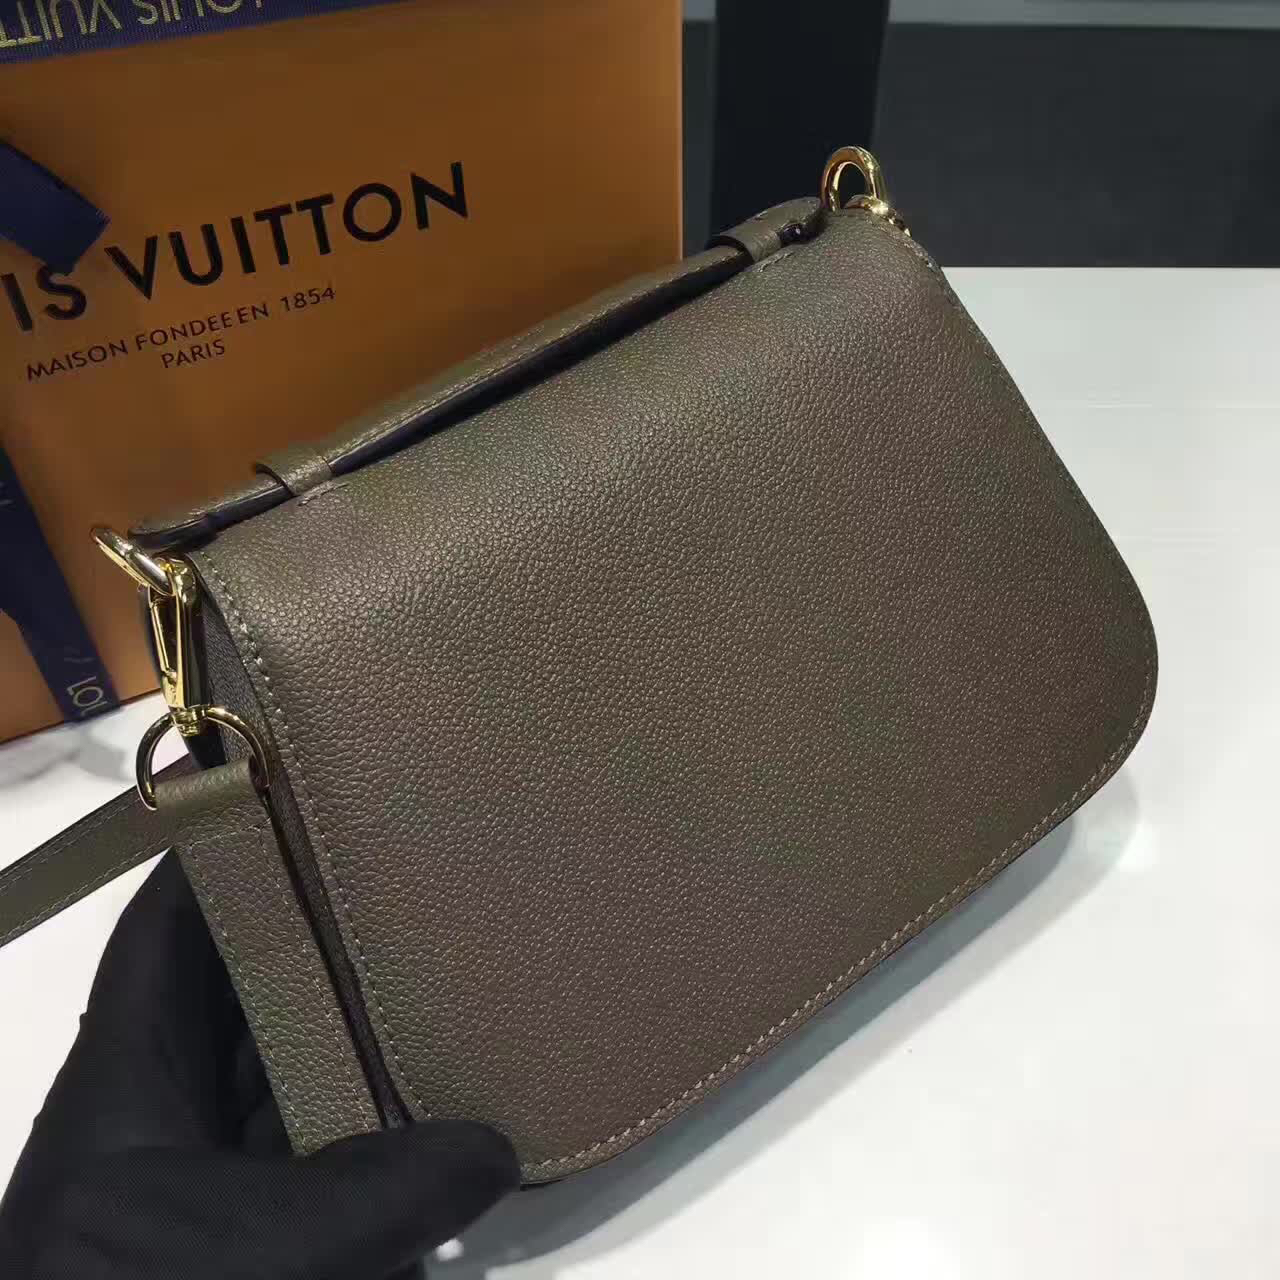 Louis Vuitton M54060 Bag Framboise Neo Vivienne